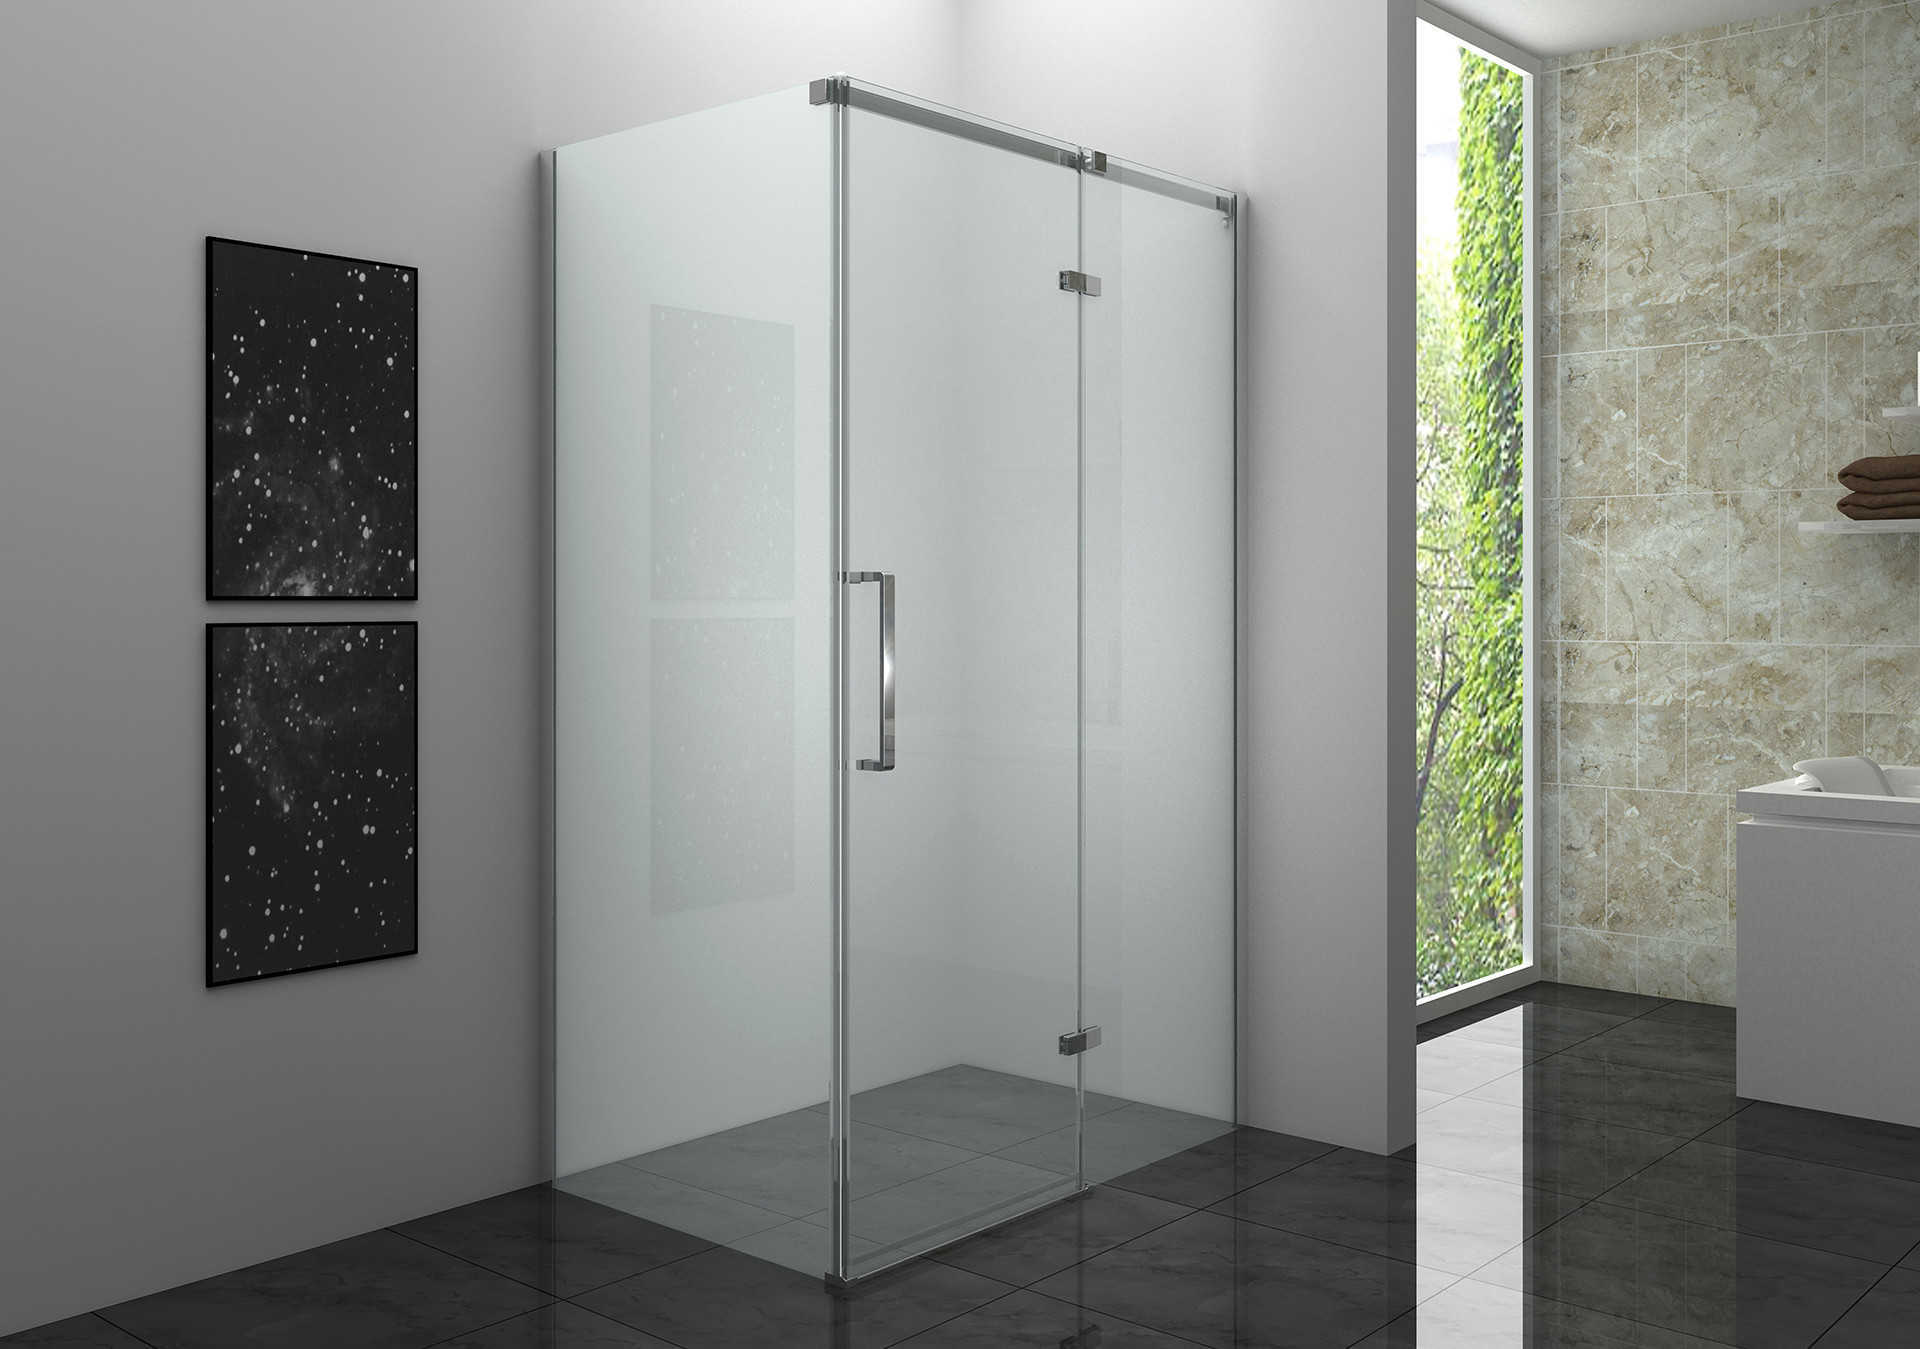 Une cabine de douche quart de cercle à double porte d'angle est un type de cabine de douche conçue pour s'intégrer dans le coin d'une salle de bain